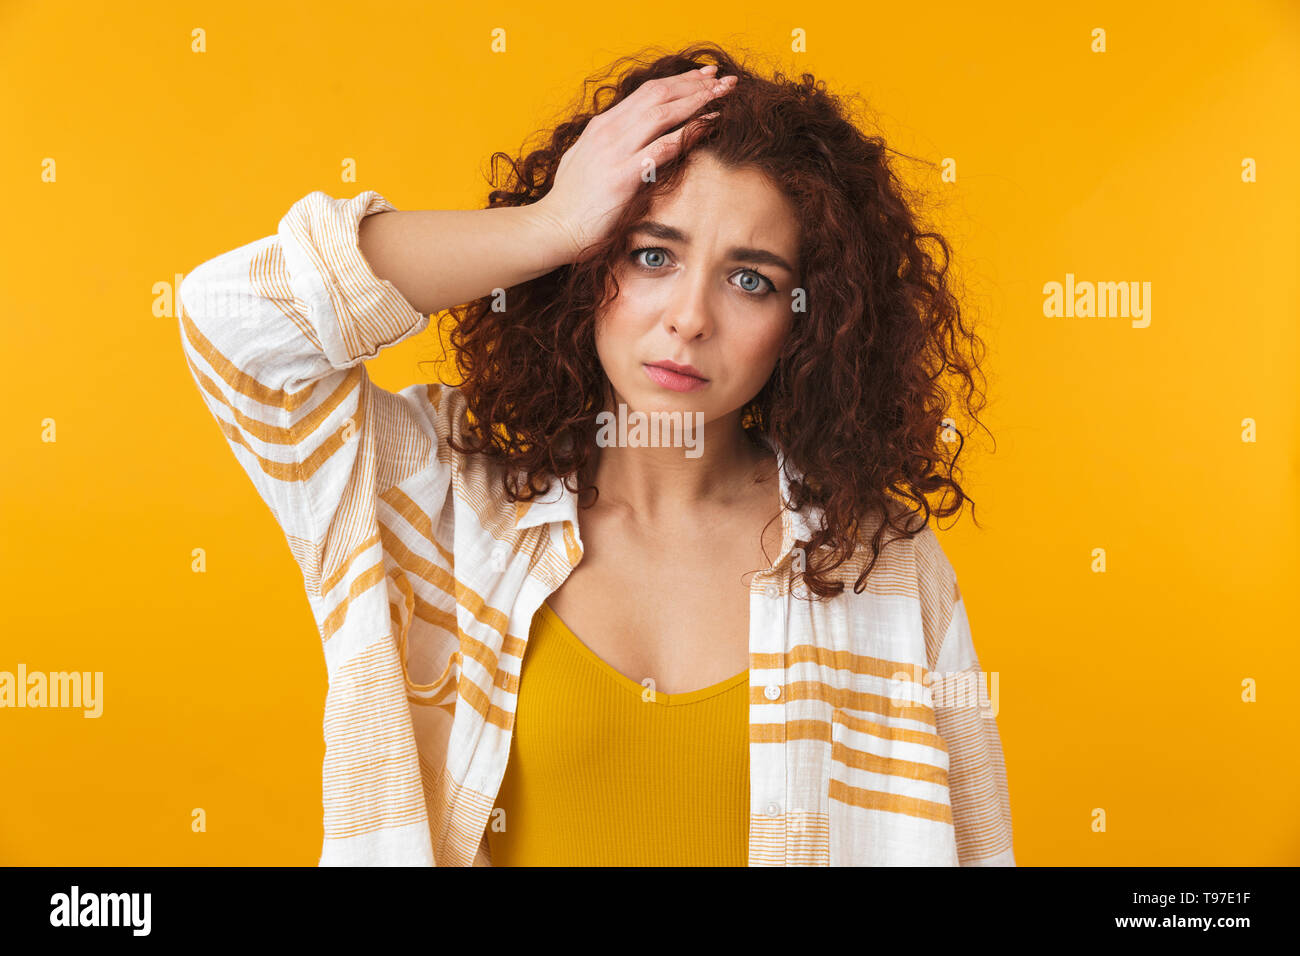 Image de femme perplexe 20s avec des cheveux bouclés saisissant sa tête, isolé sur fond jaune Banque D'Images